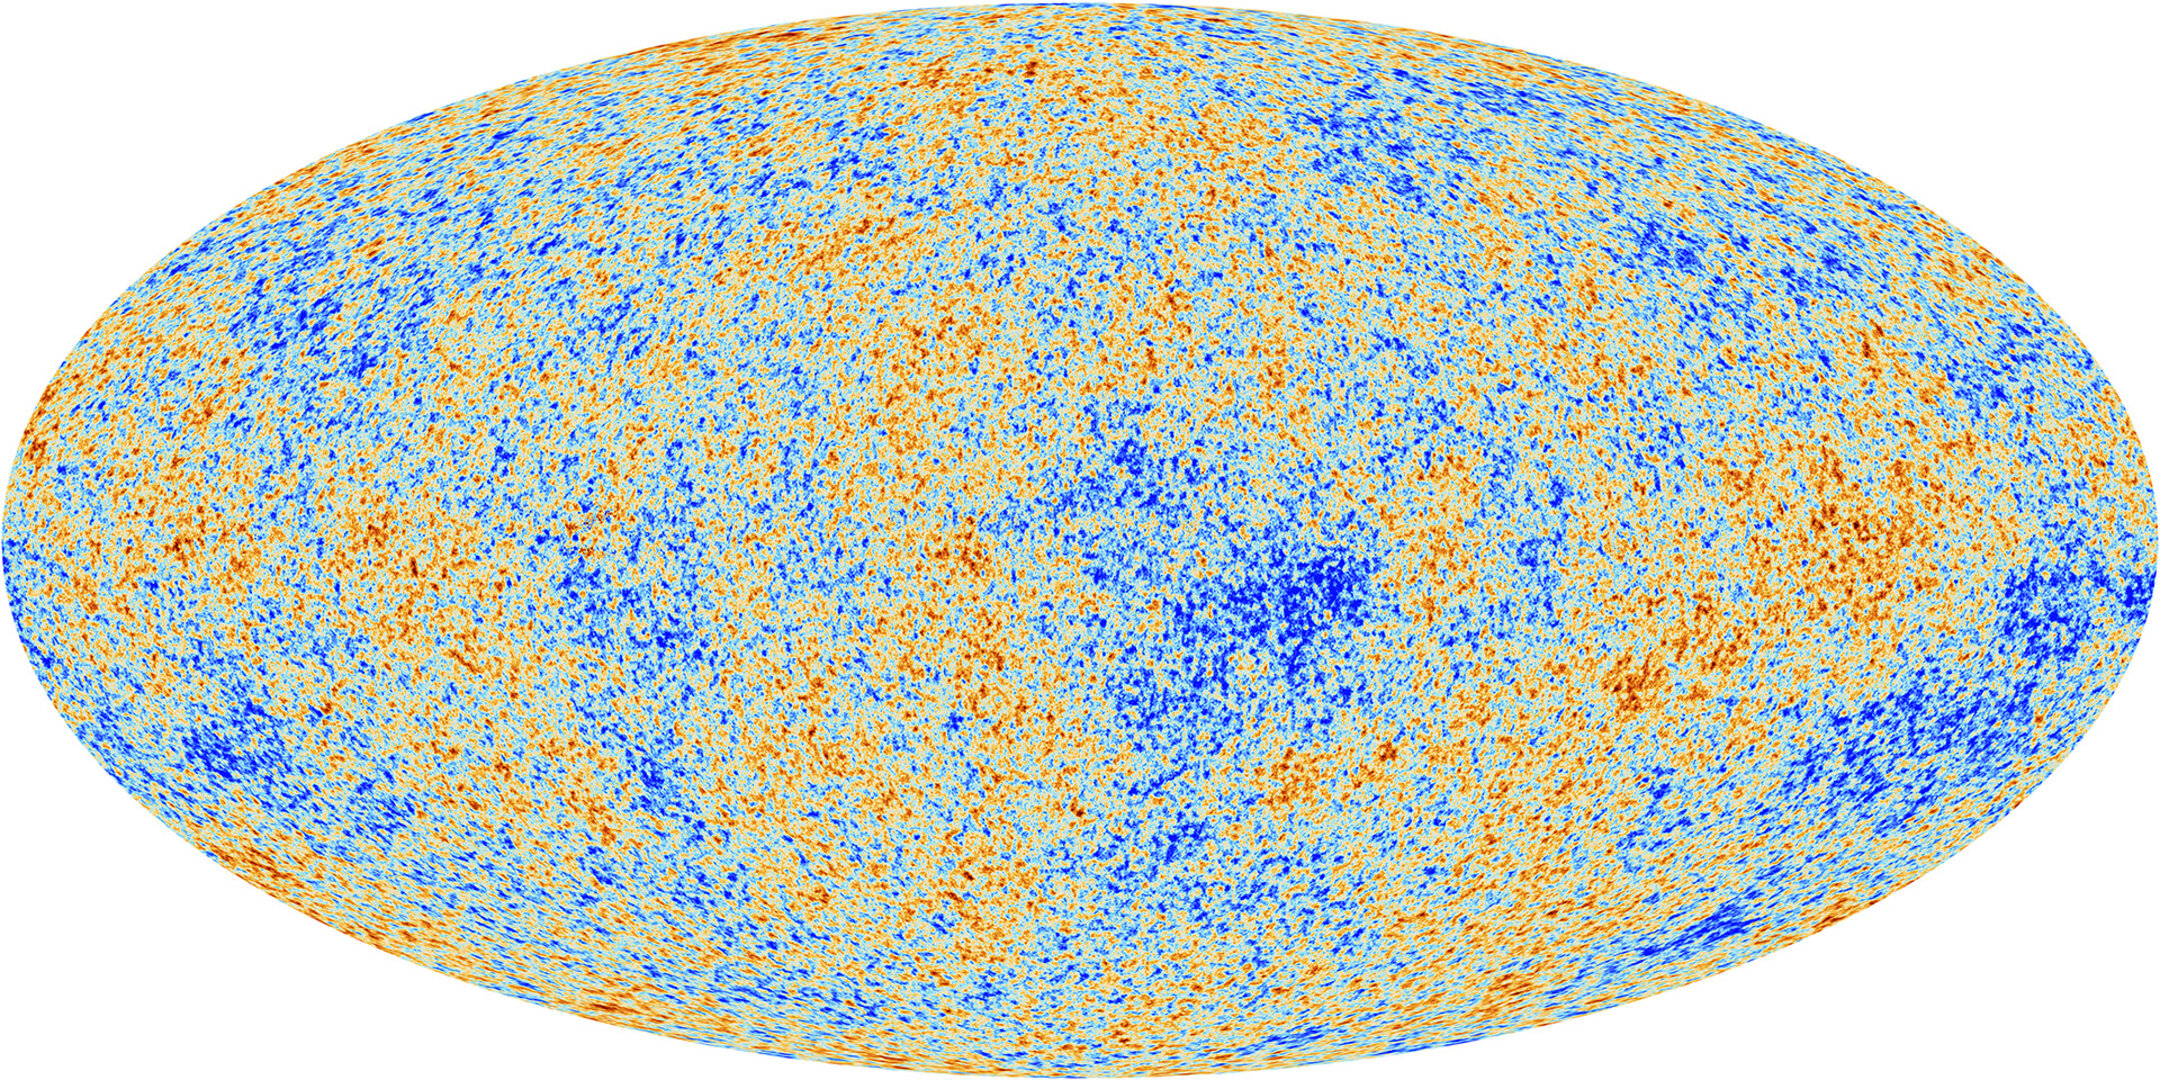 Kosmische achtergrondstraling in beeld gebracht door de Planck-ruimtetelescoop